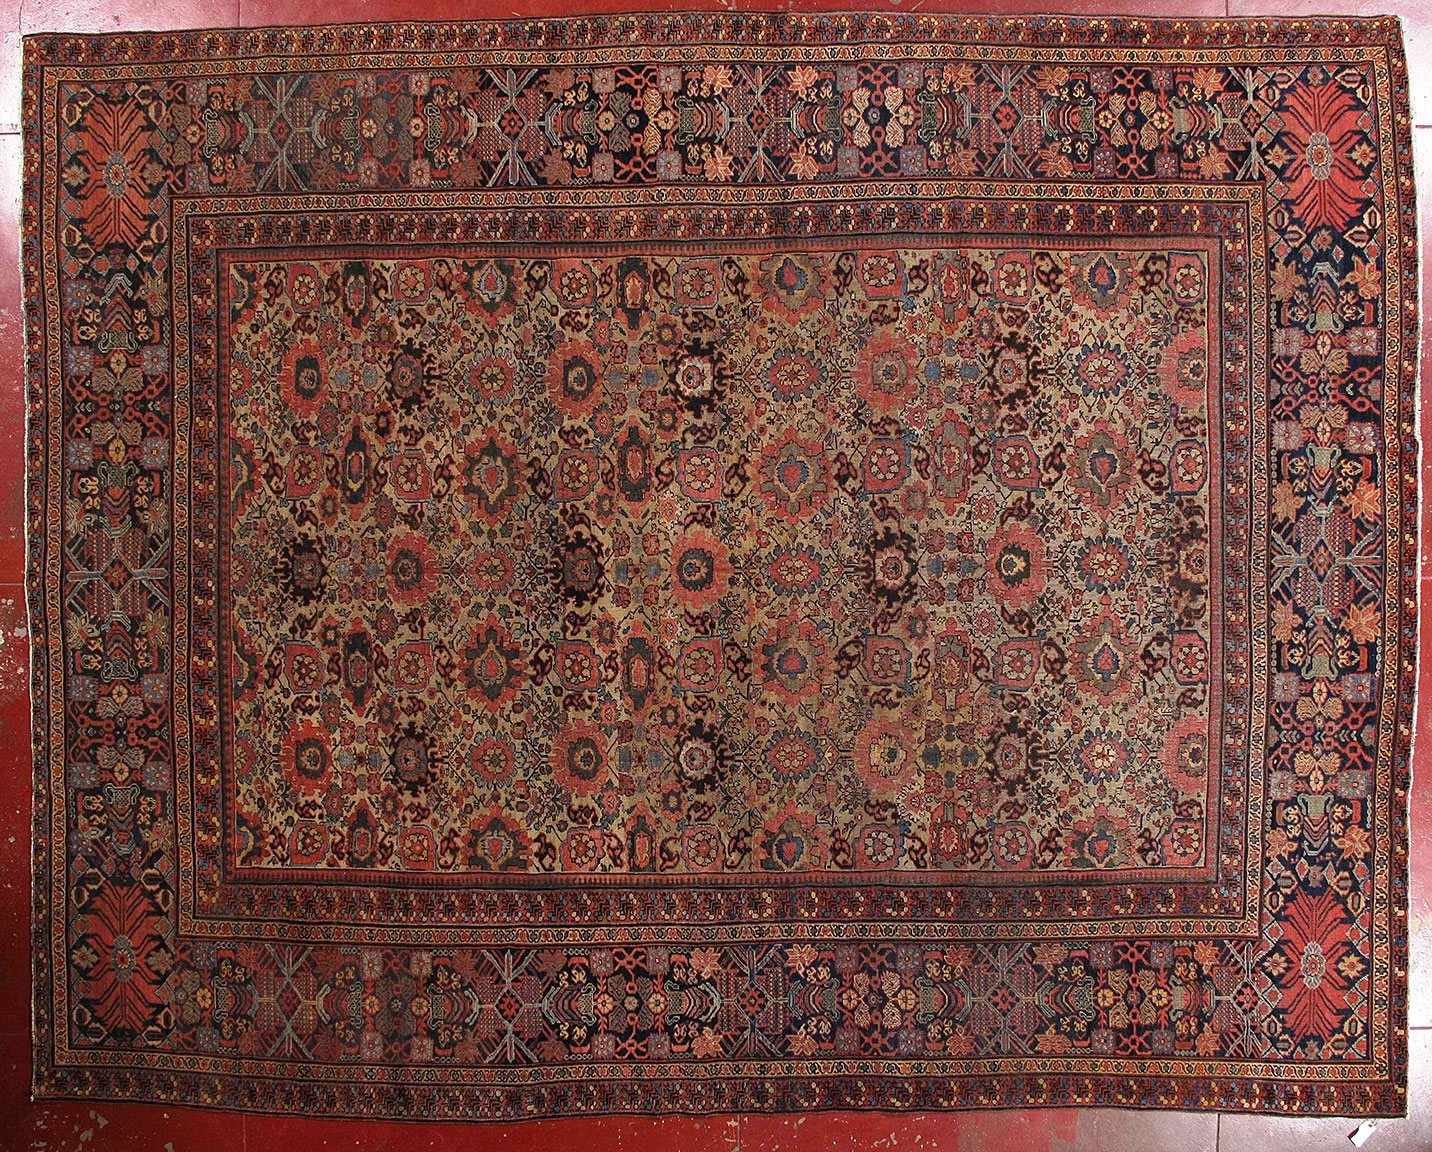 Antique mahal Carpet - # 53218